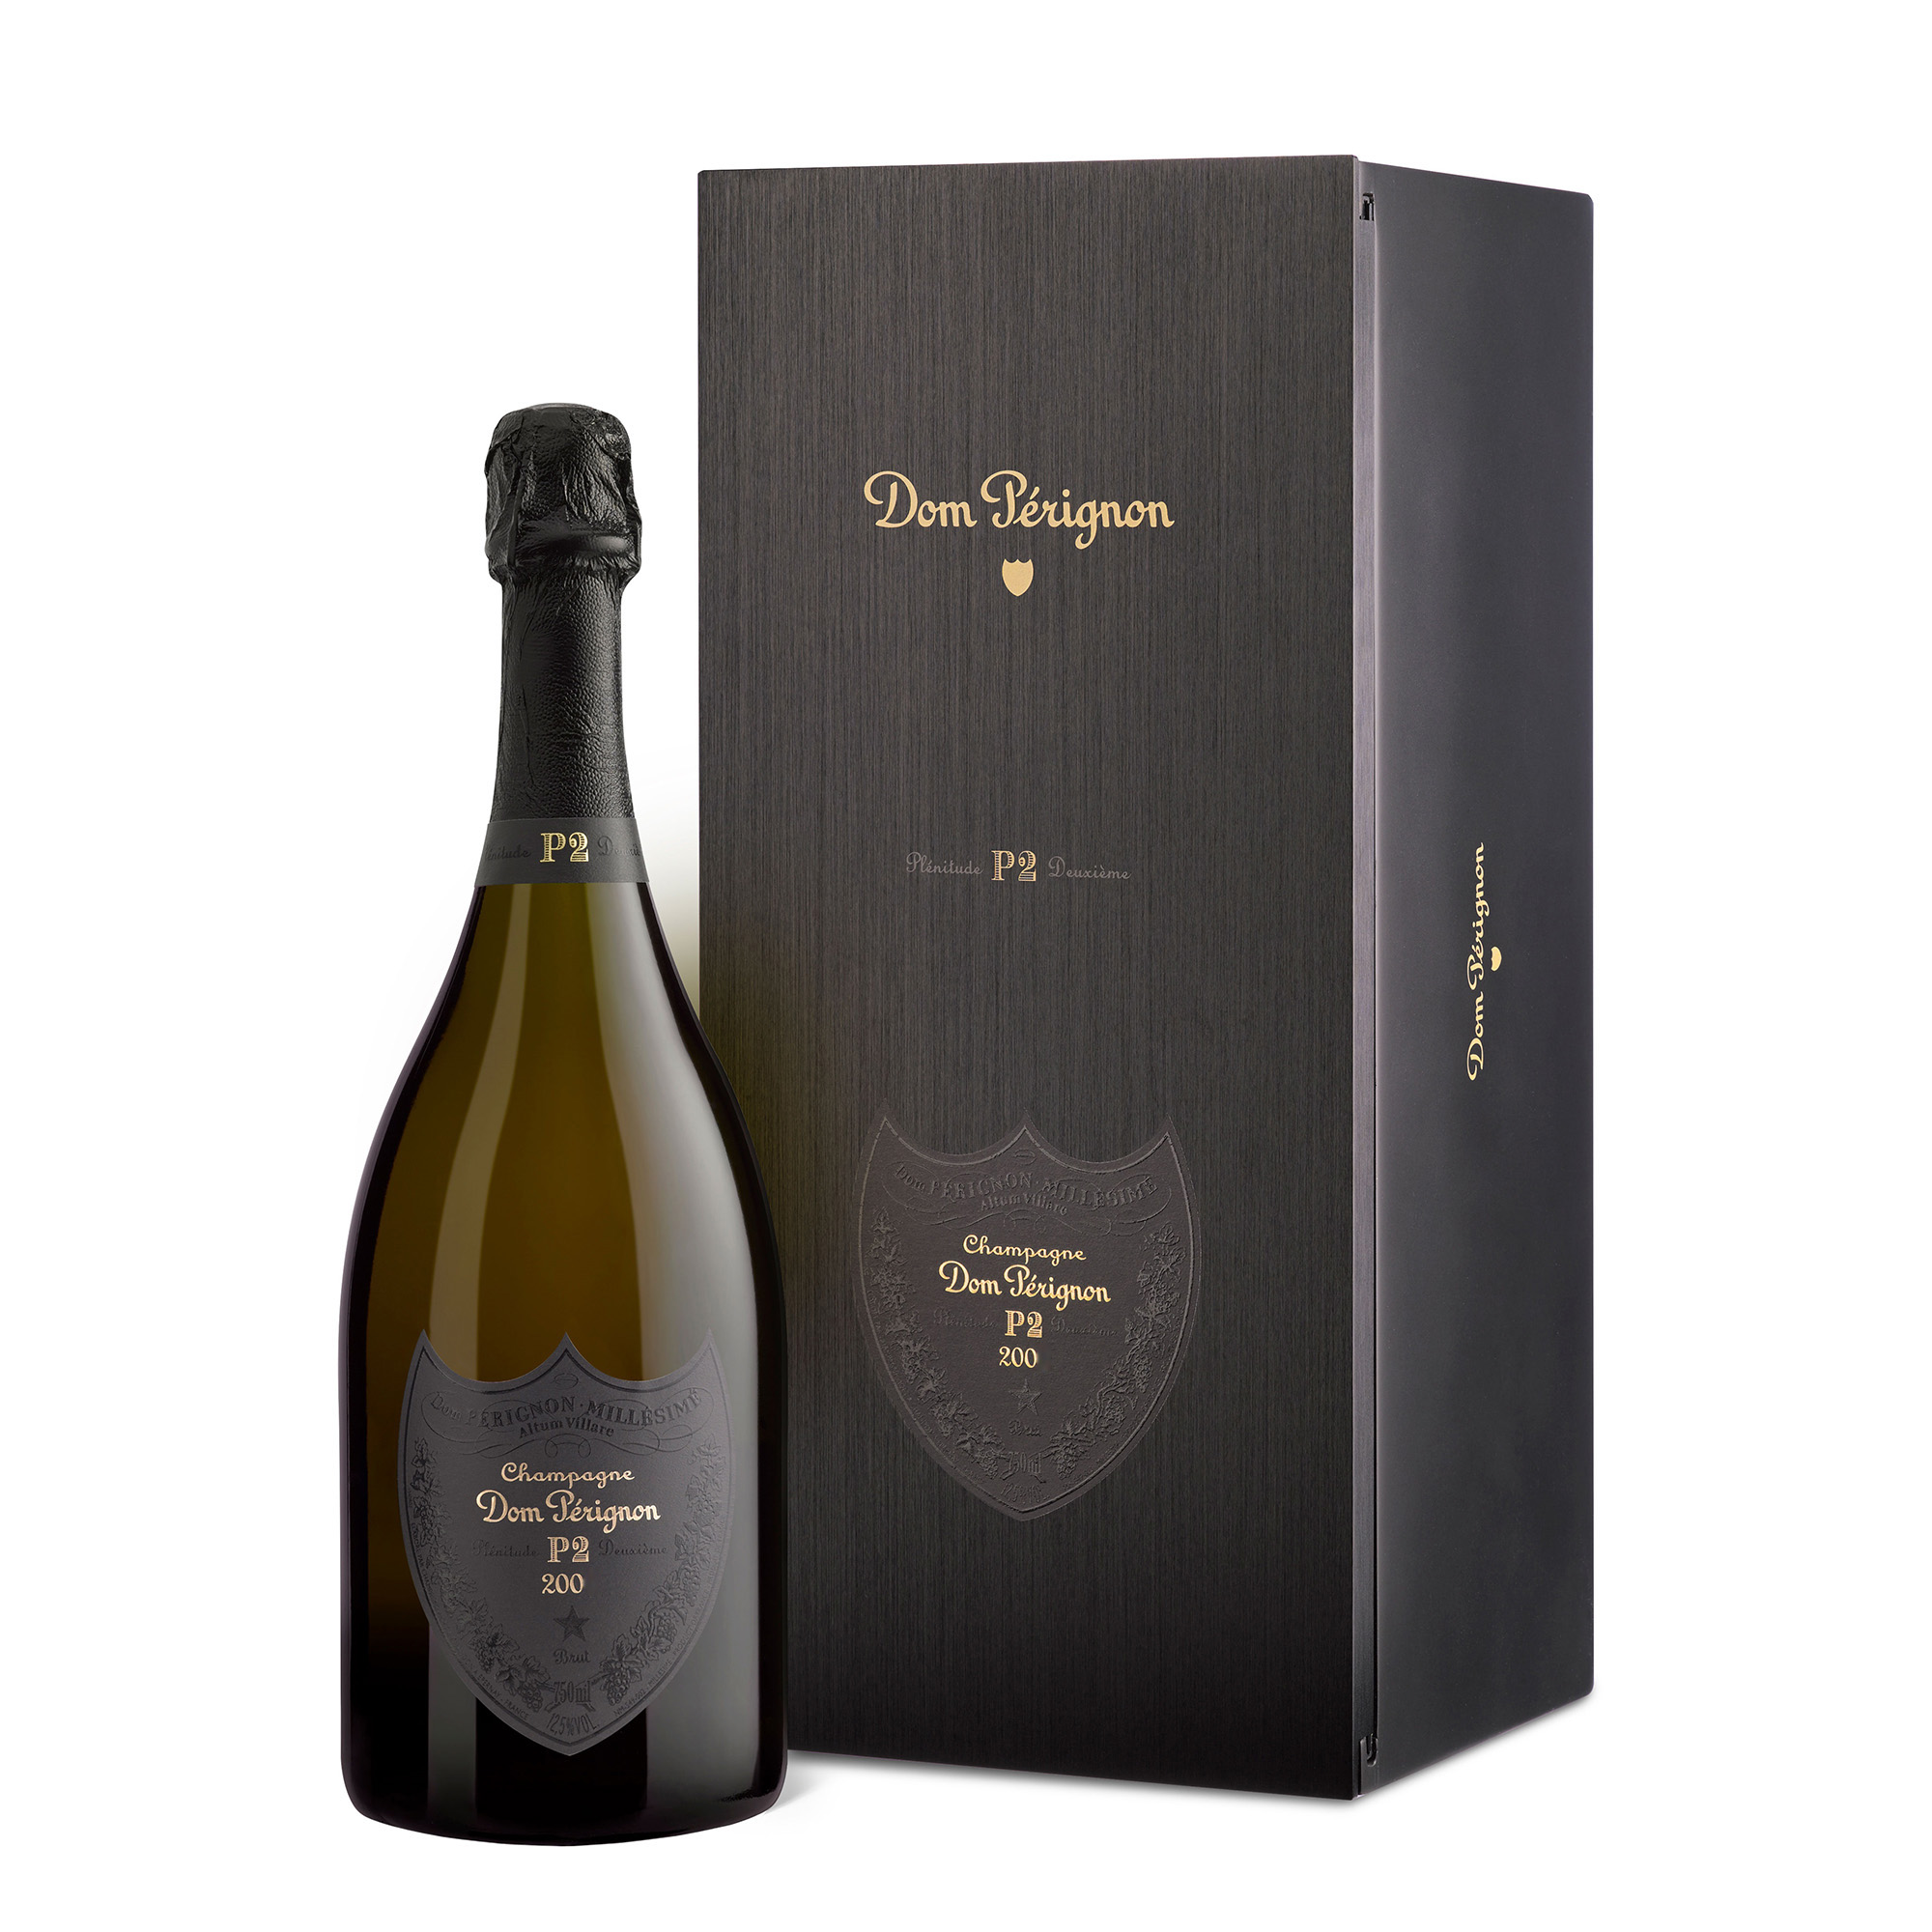 Dom Perignon 1996 Plenitude P2 Vintage Champagne 75cl Gift Boxed